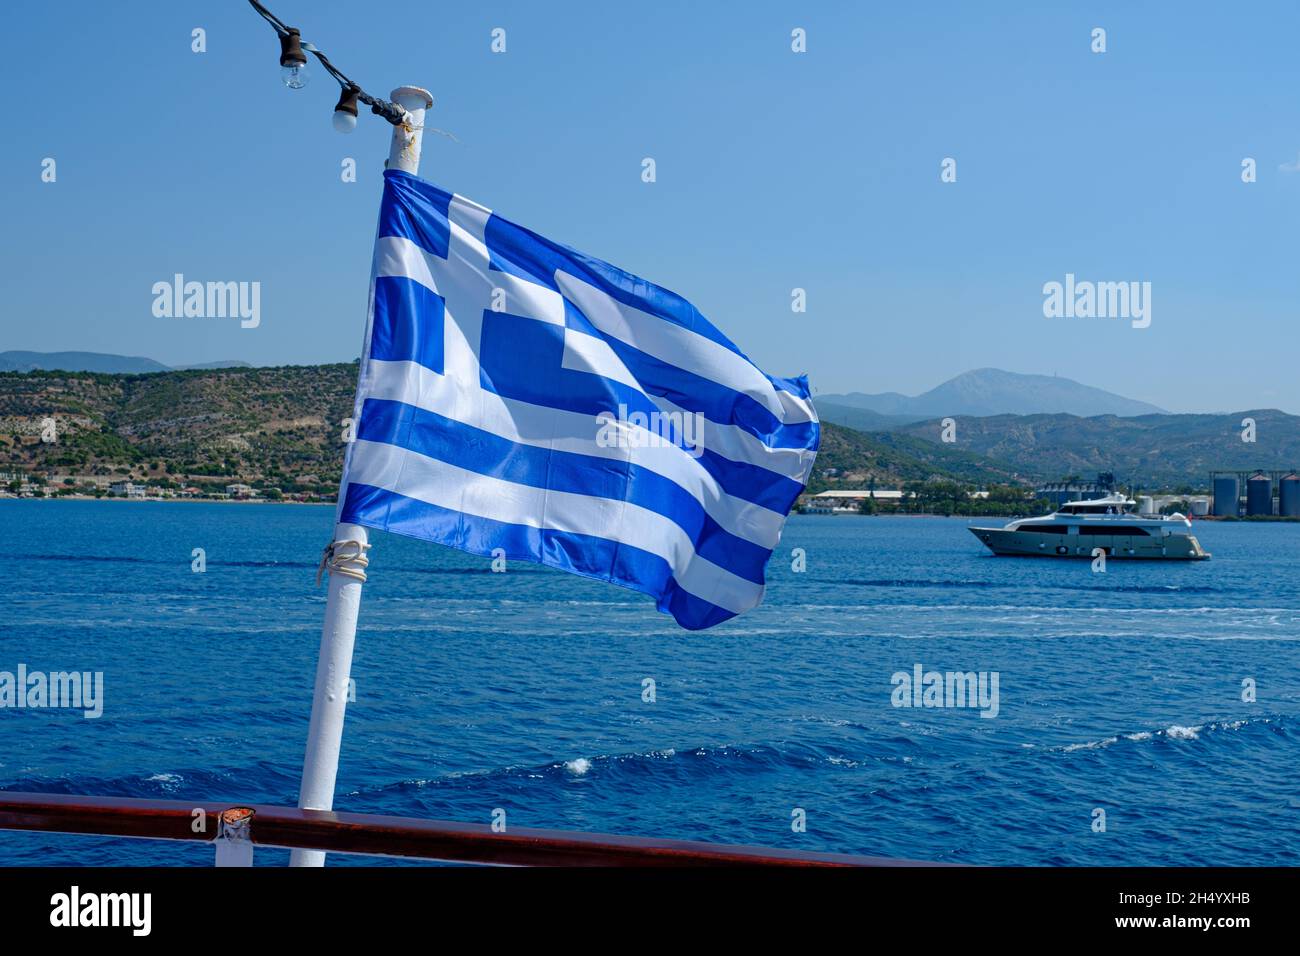 Gros plan du drapeau de la Grèce qui s'enroule dans les airs Banque D'Images